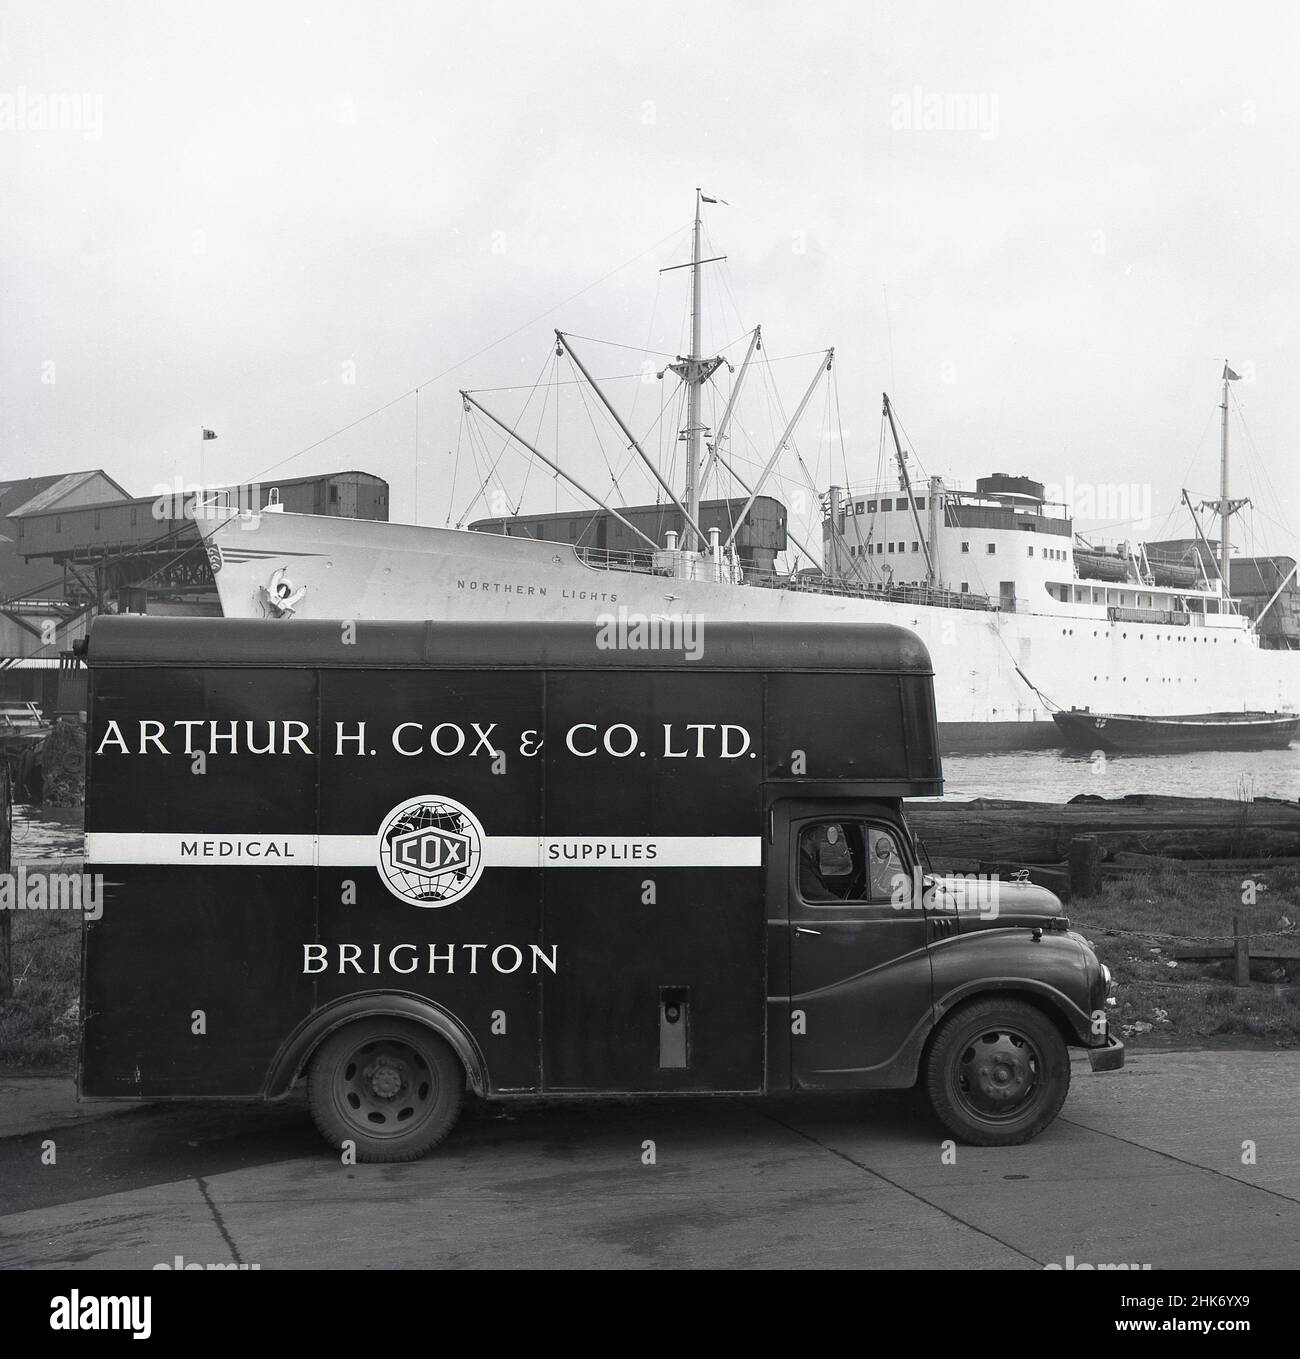 1950s, historisch, ein Lieferwagen von Arthur H. Cox & Co aus Brighton, England, UK in Austin. Geparkt in London legt am Hafen von London an. Das britische Unternehmen wurde 1839 von Arthur Hawker Cox gegründet und war in dieser Zeit ein führender Hersteller und Hersteller von medizinischen Hilfsmitteln, der seine Tabletten und Tabletten in die ganze Welt exportierte. Auch an den Docks, das norwegische Frachtschiff, 'Nördliche Lichter'. Stockfoto